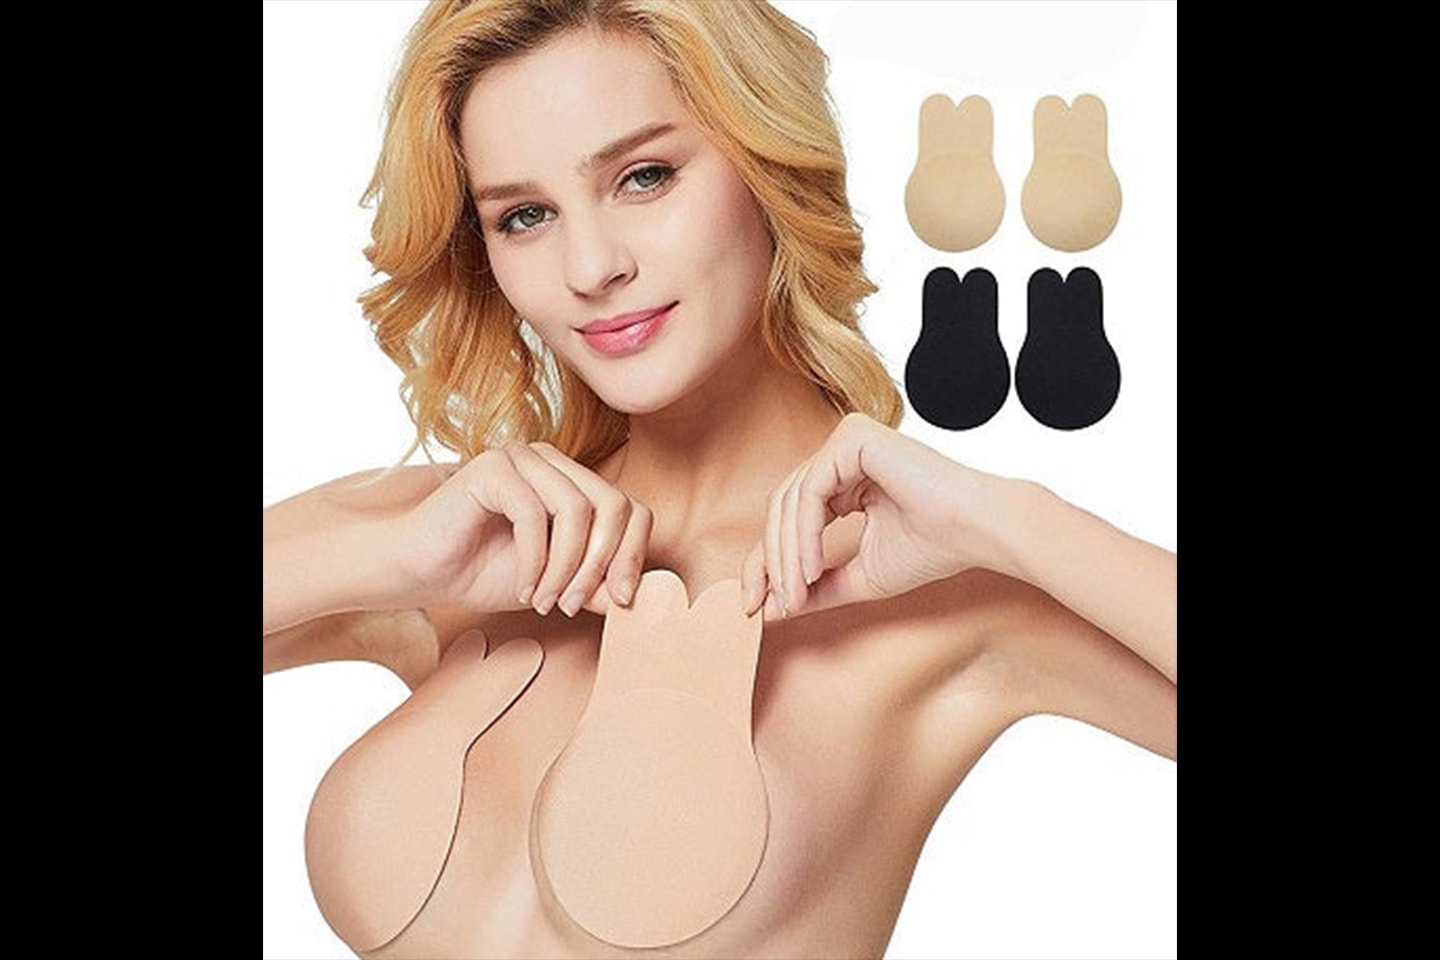 Selvklebende push-up nipple covers (1 av 7)